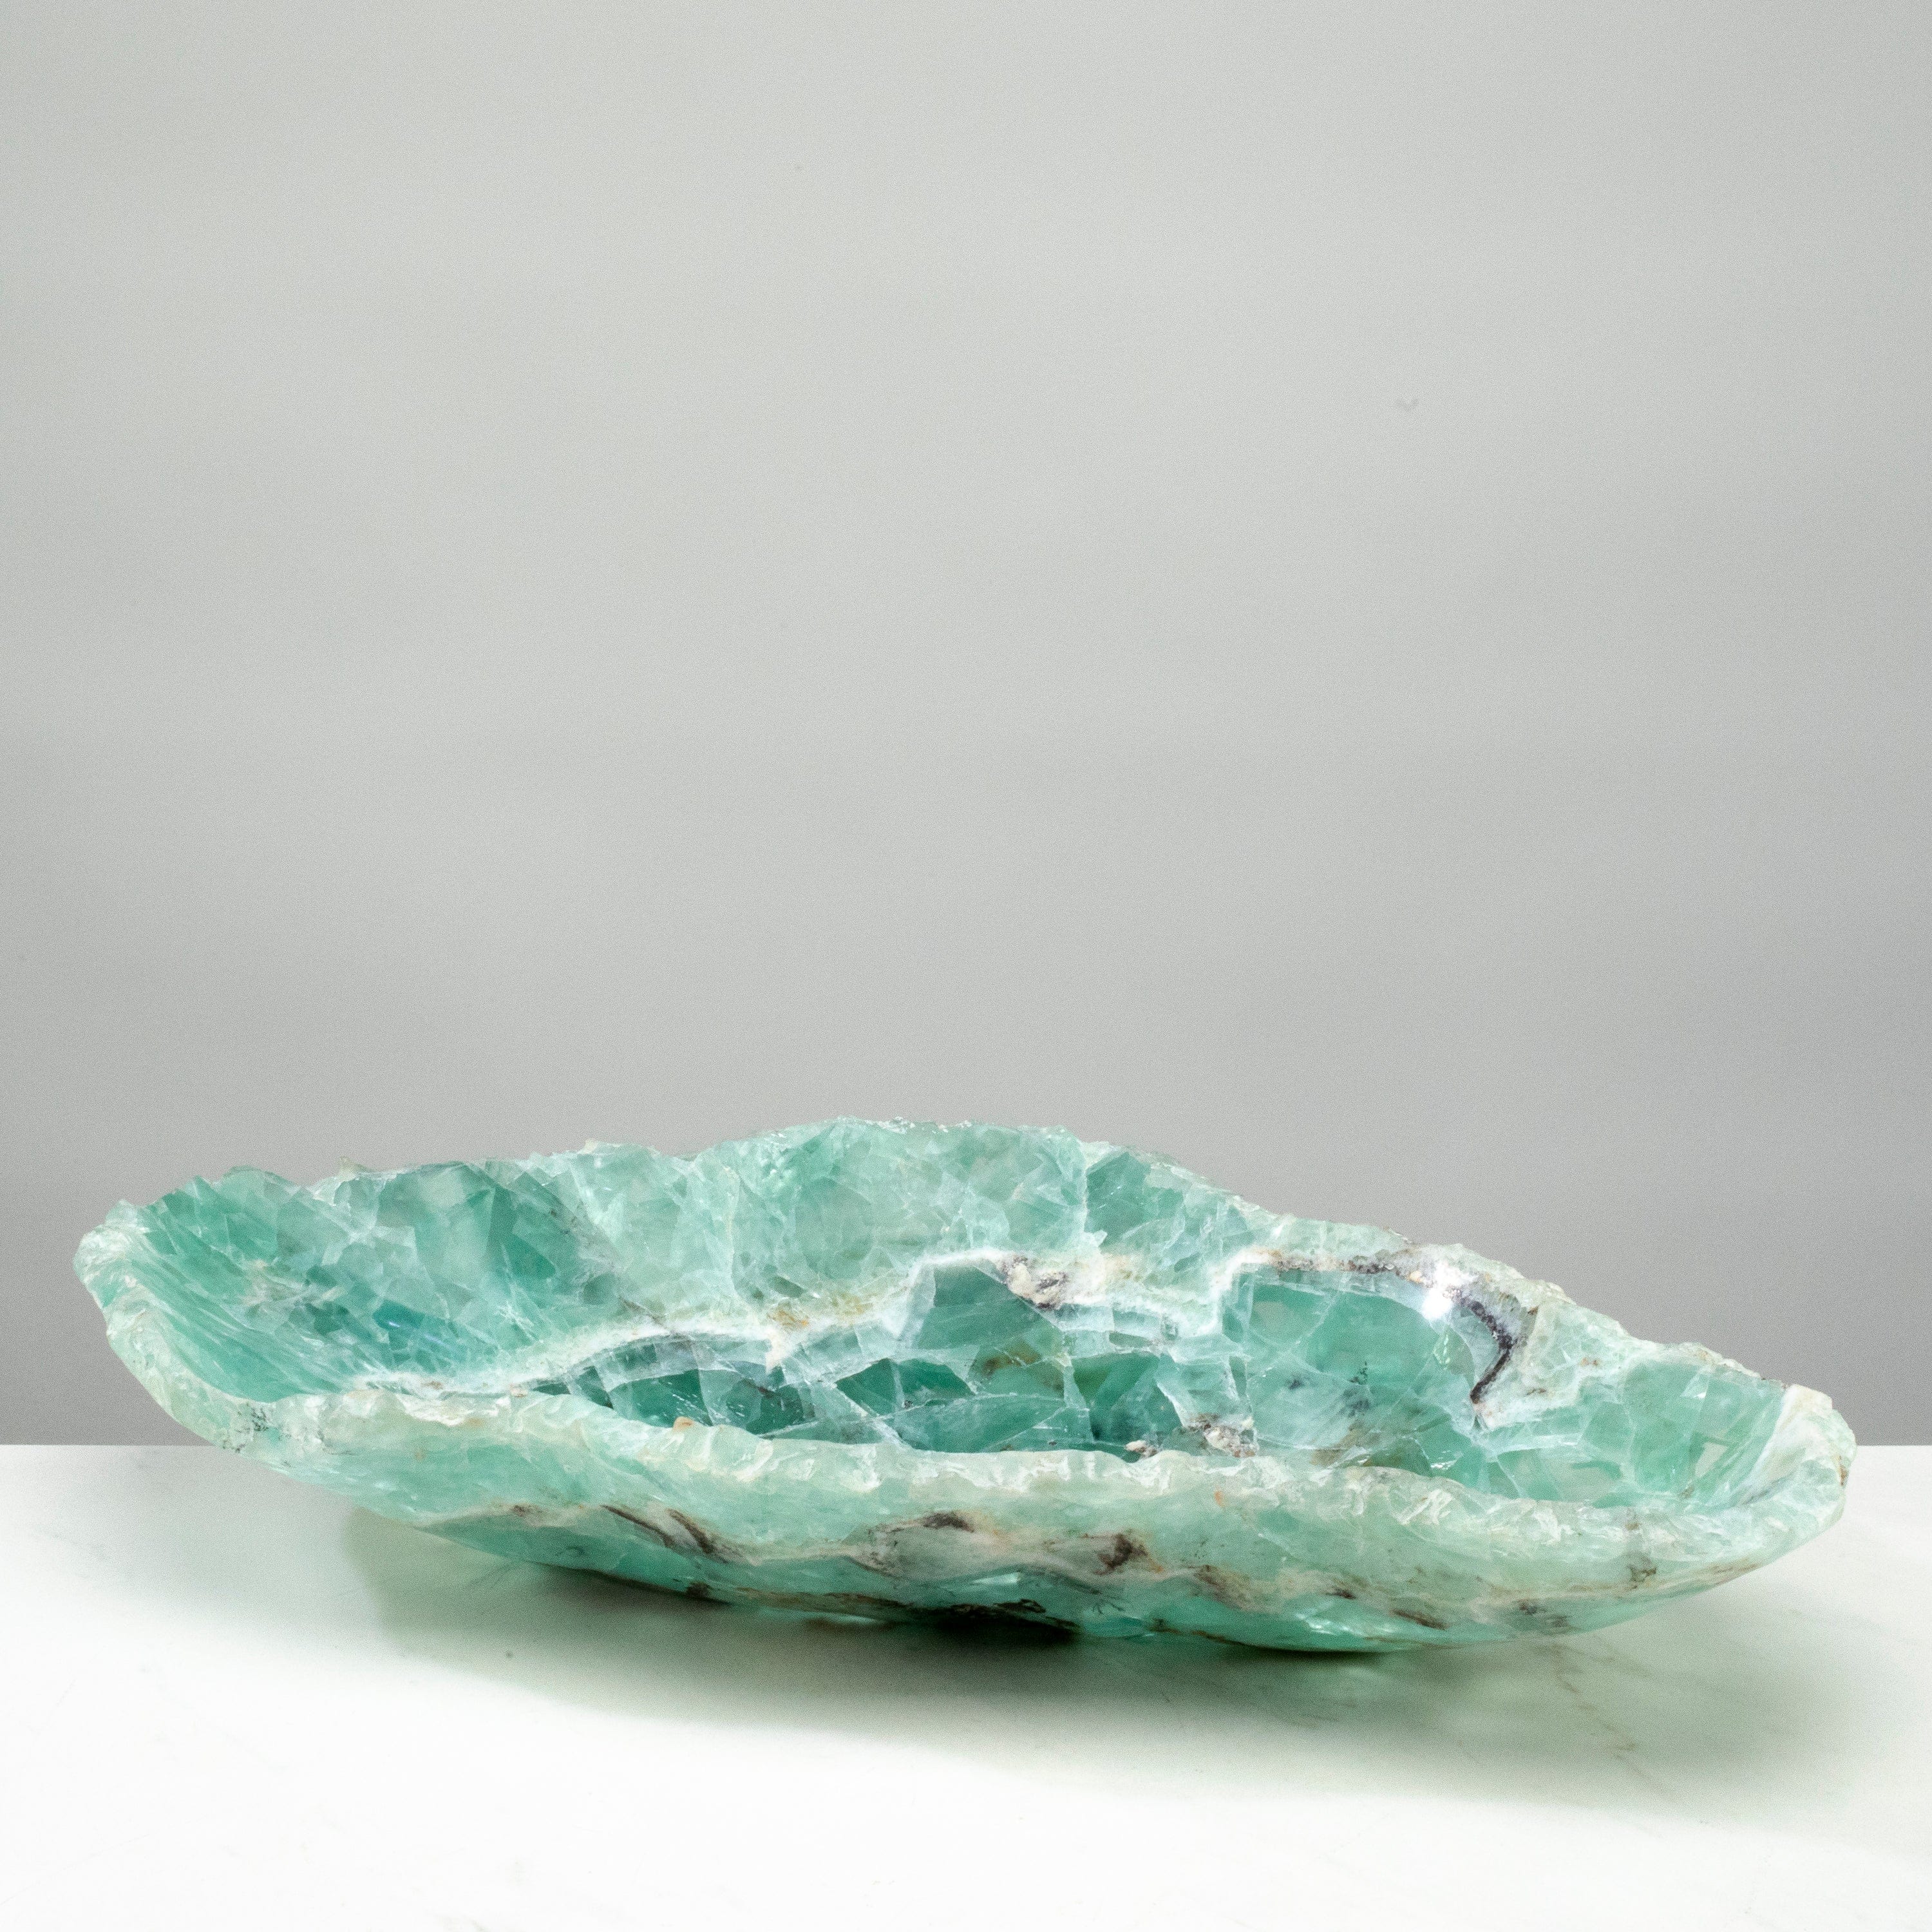 KALIFANO Gemstone Bowls Natural Blue / Green Fluorite Bowl 20" BFL7600.002